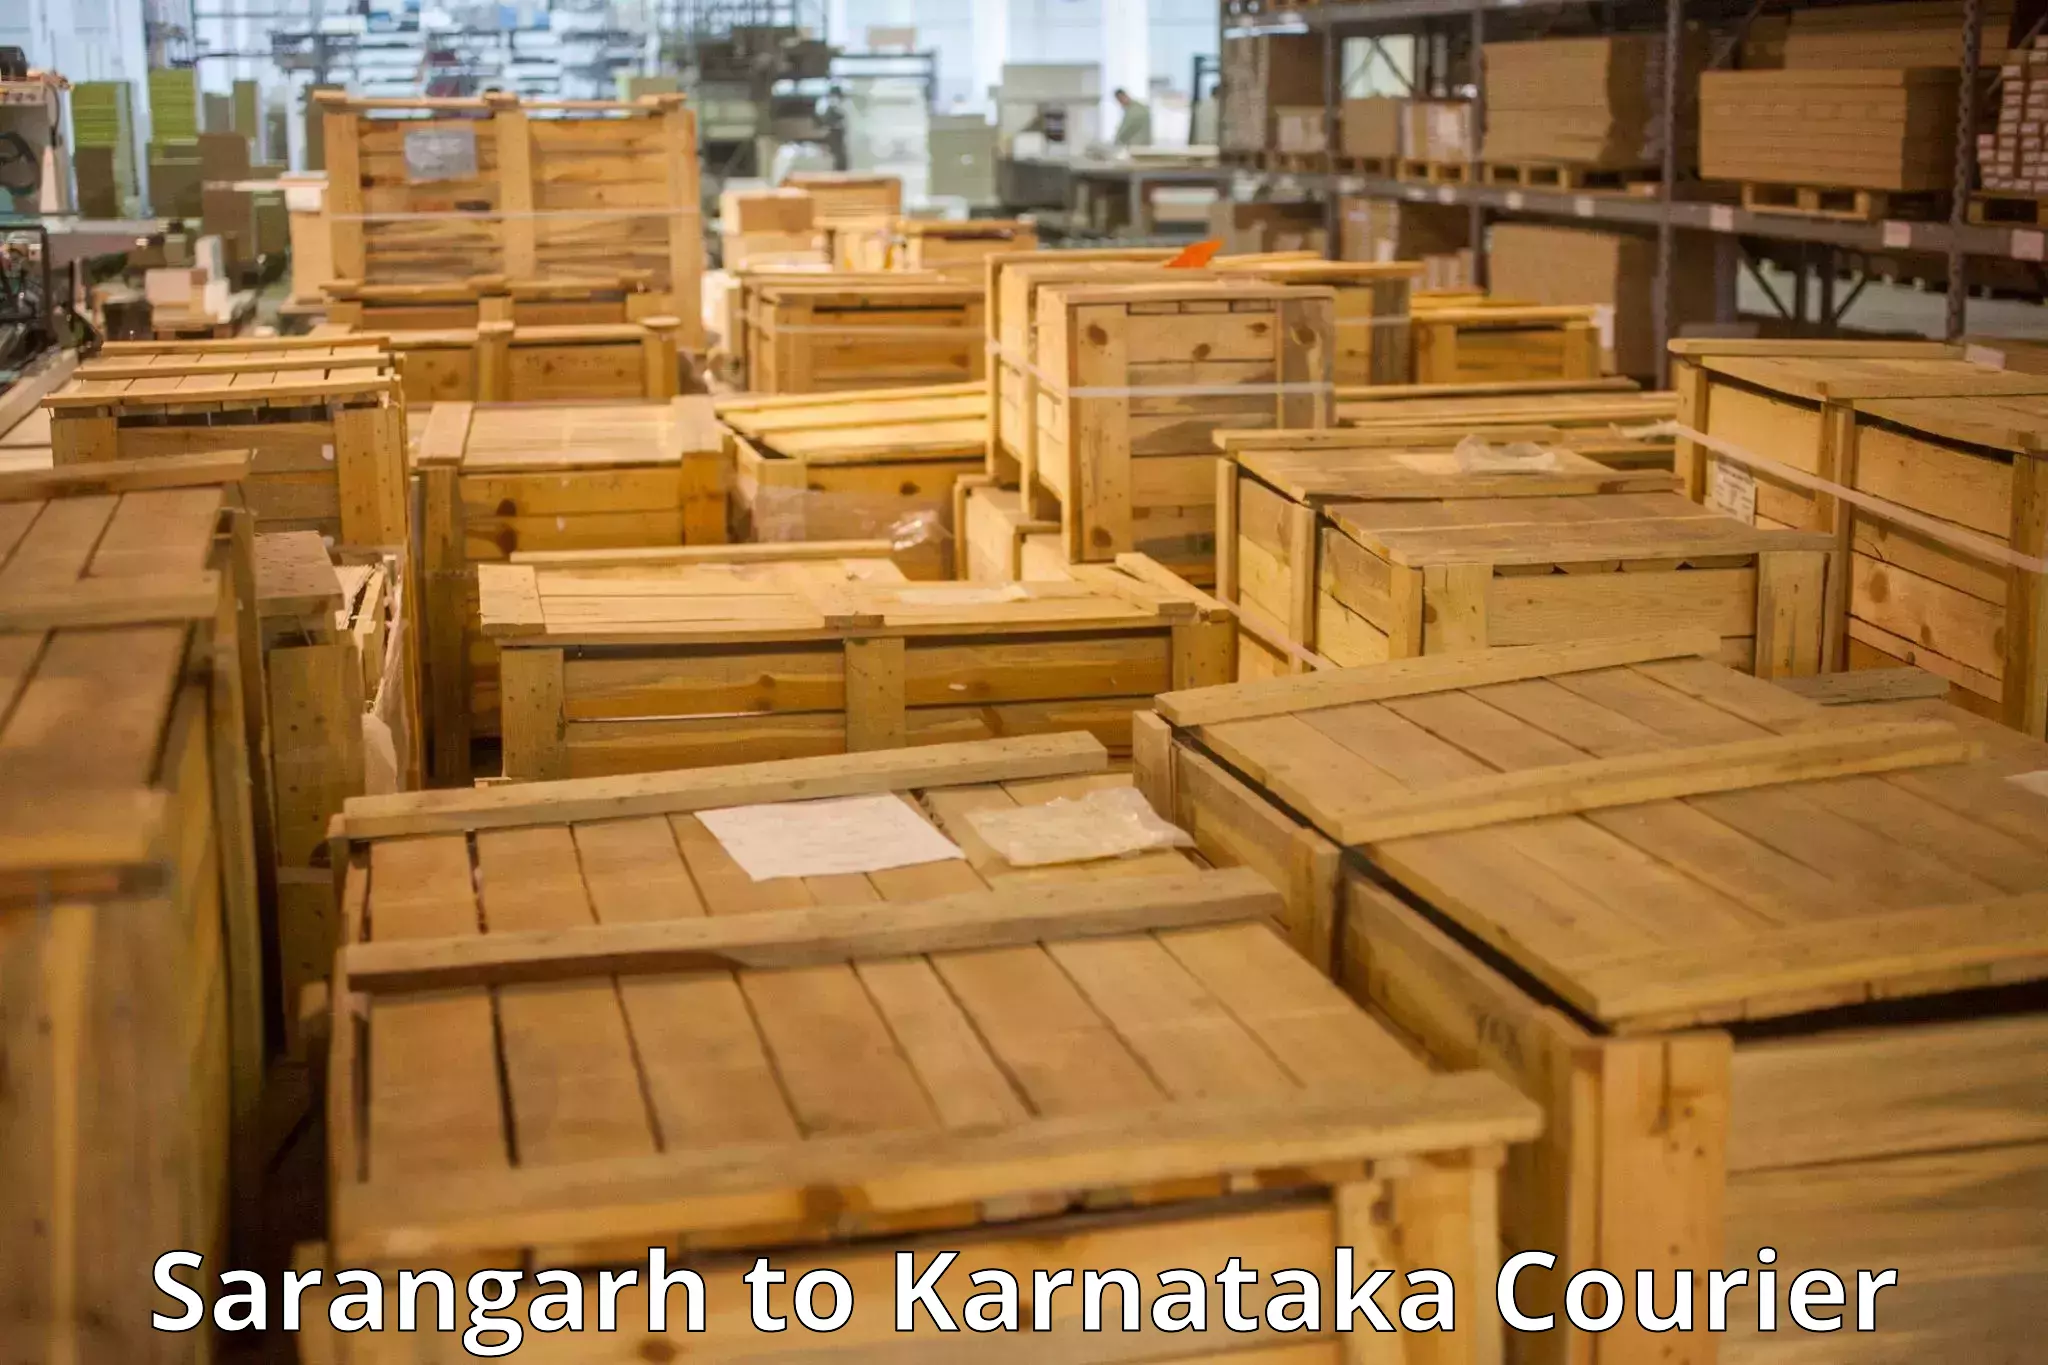 Baggage shipping experts Sarangarh to Channapatna